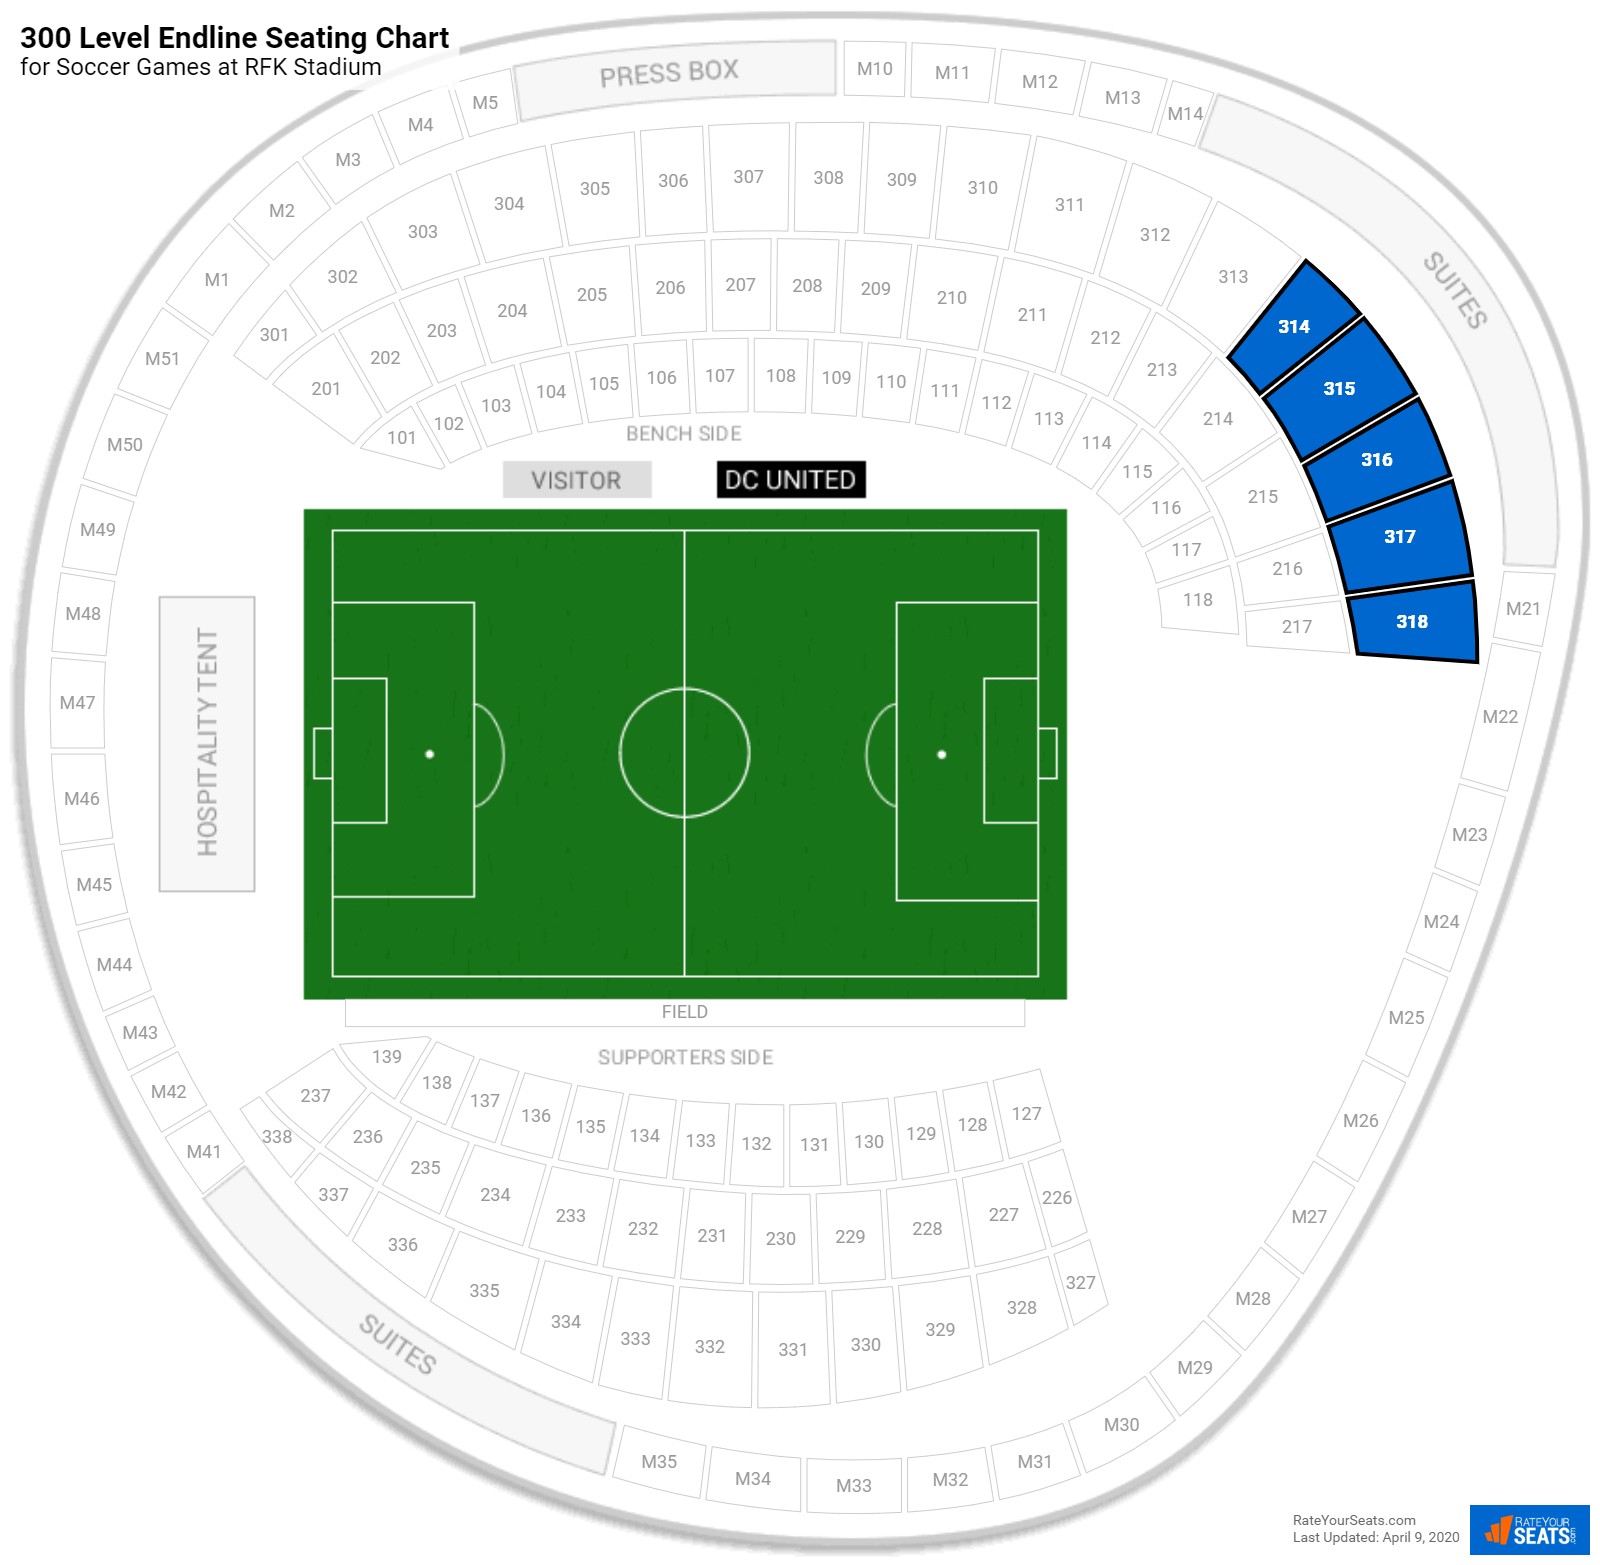 RFK Stadium Seating for Soccer